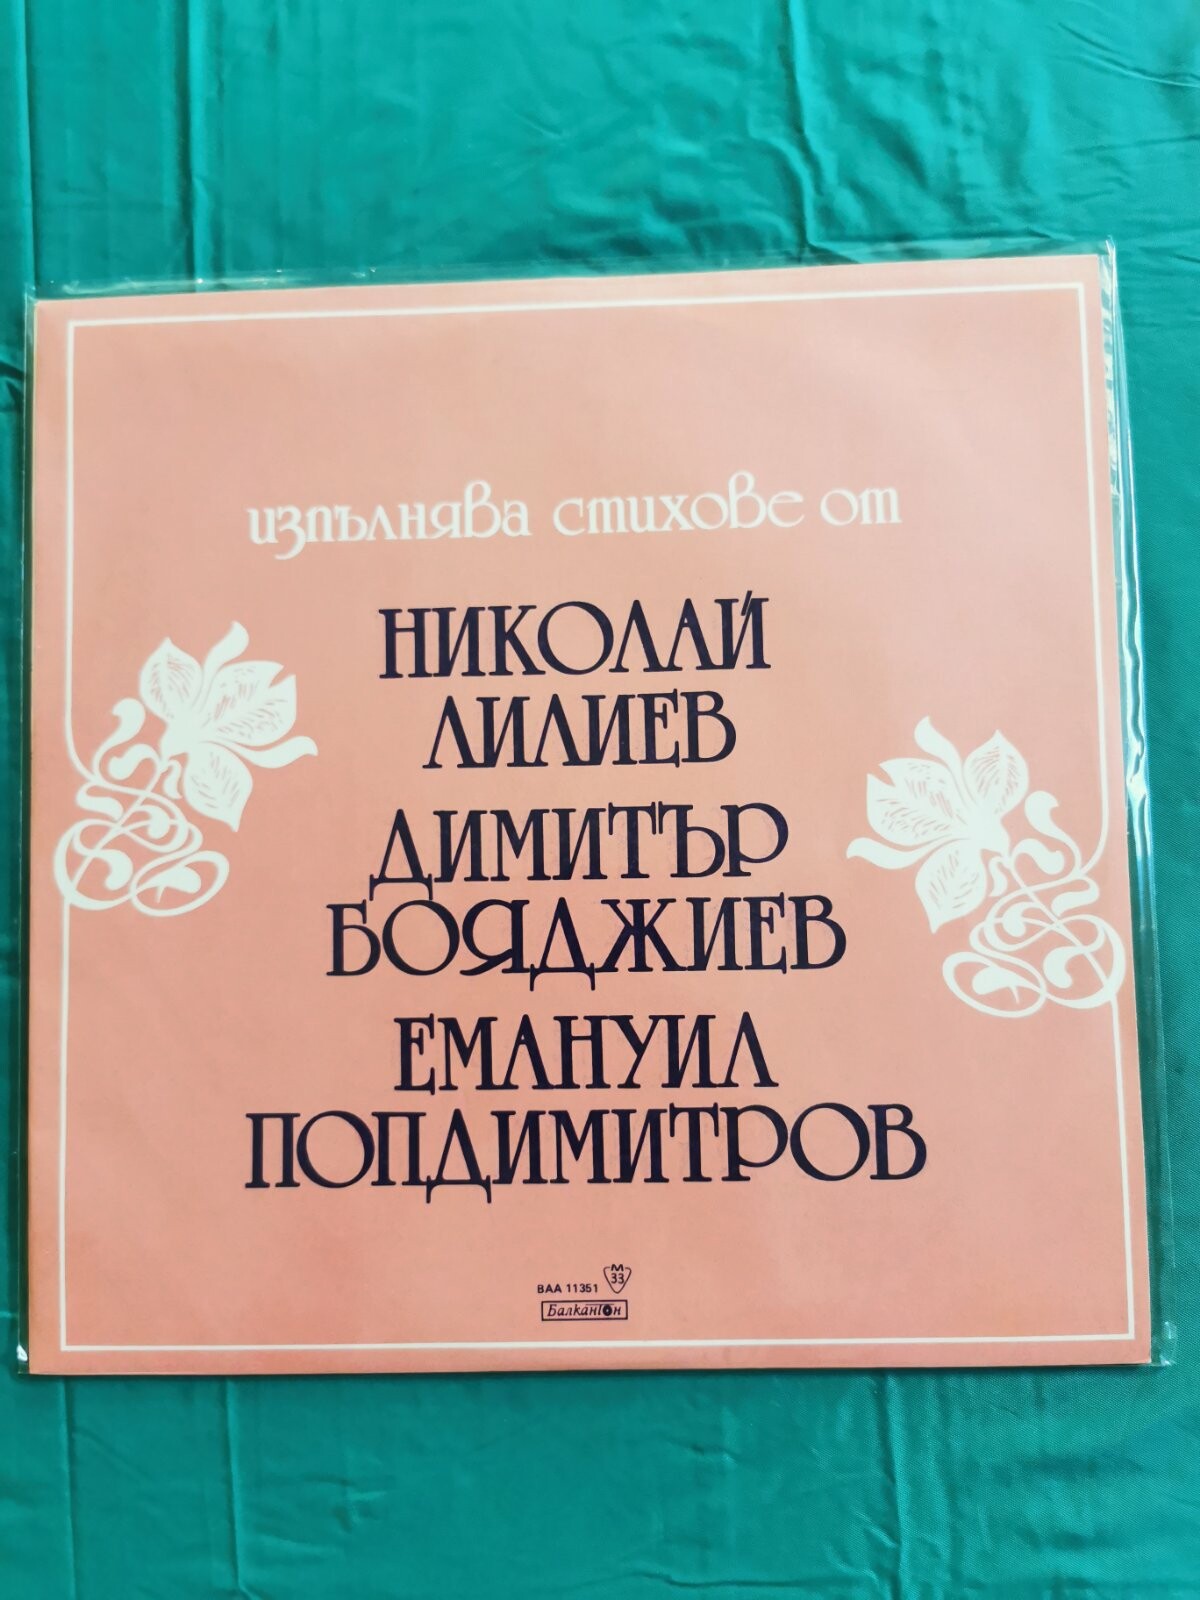 Стихове от Николай Лилиев, Димитър Бояджиев и Емануил Попдимитров изпълнява Любомир Кабакчиев